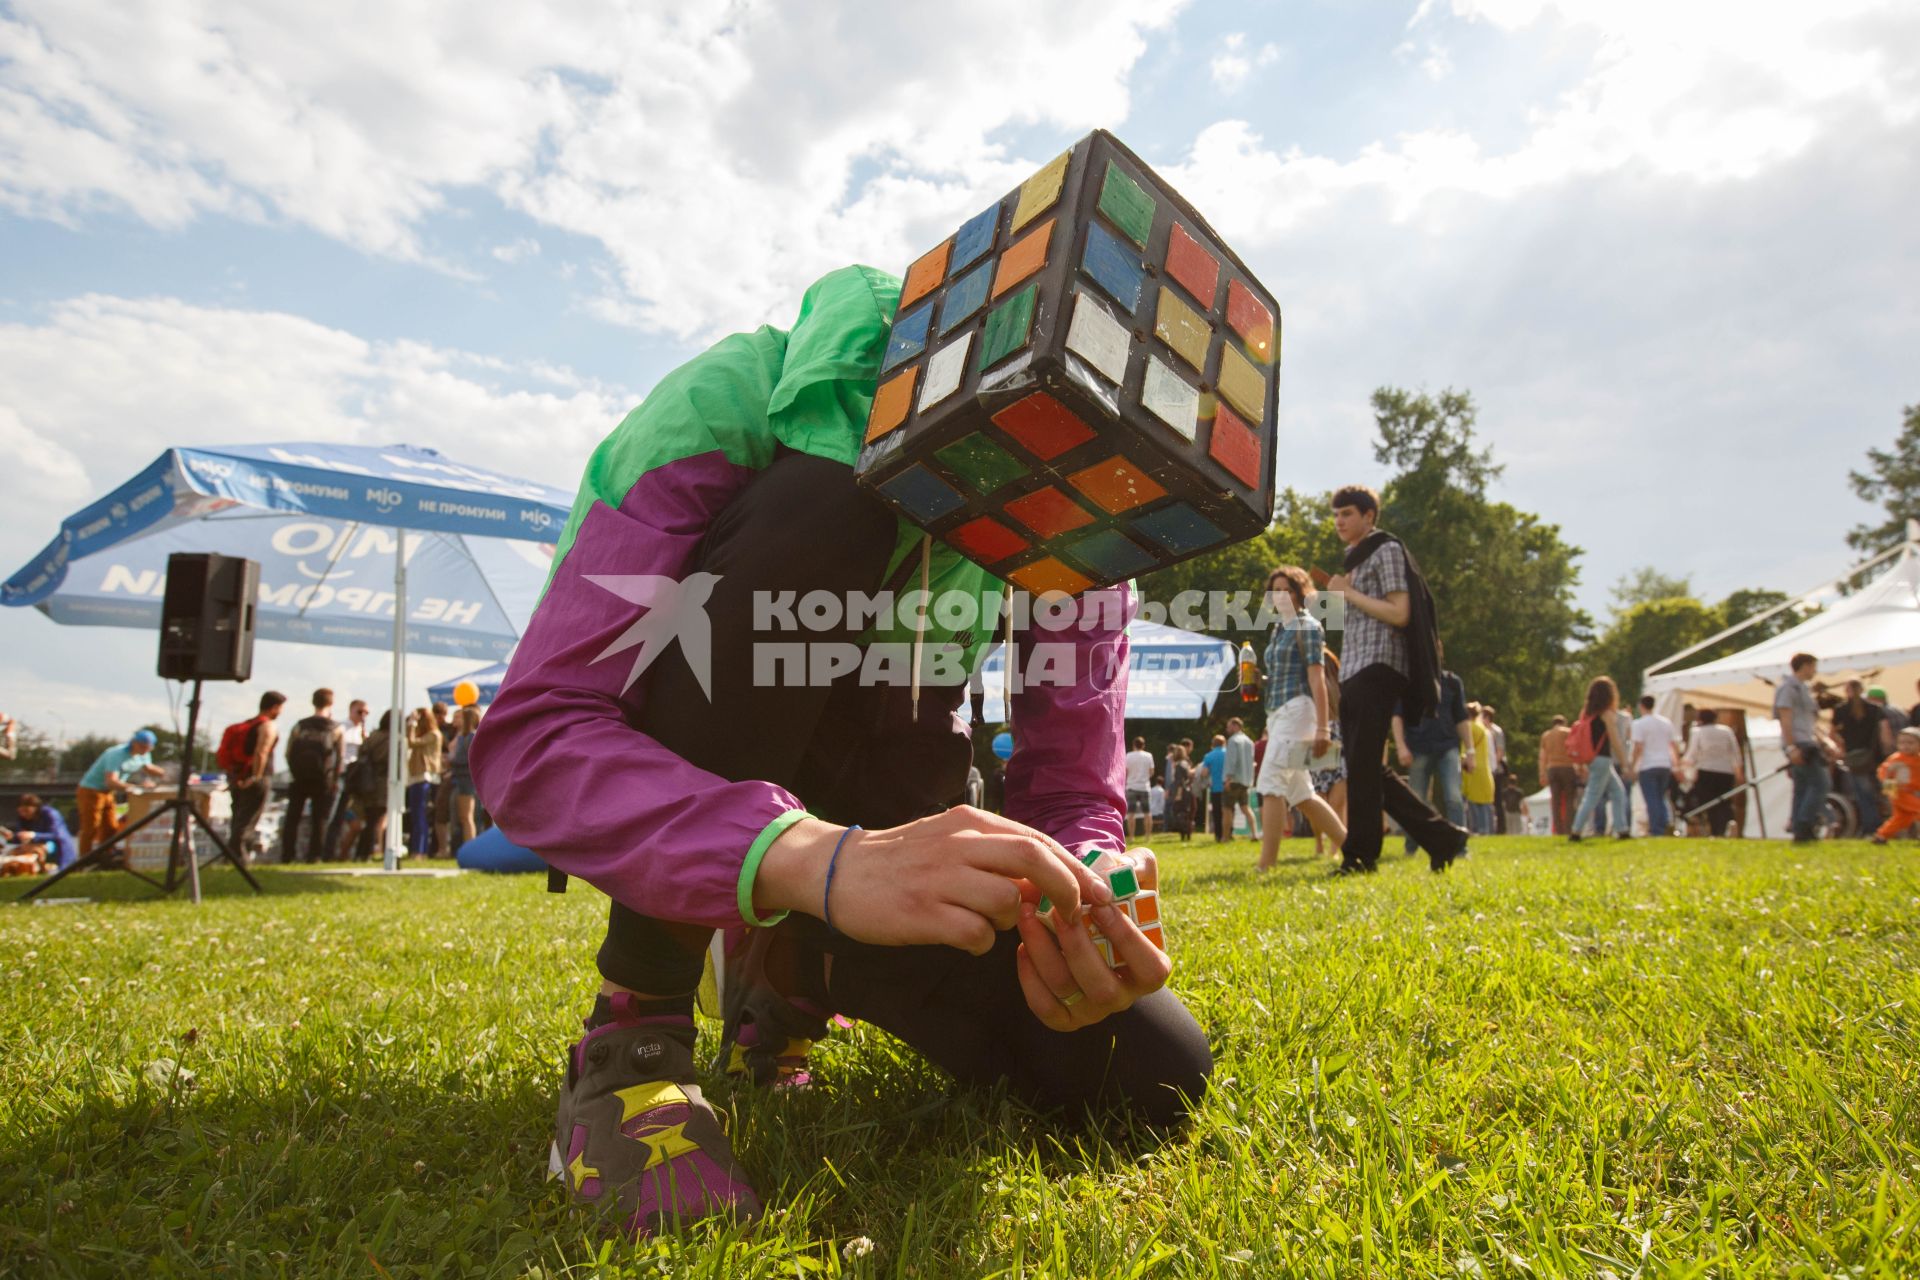 Санкт-Петербург. Молодой человек собирает кубик Рубика на фестивале технологий, науки и искусства Geek picnic в Санкт-Петербурге.